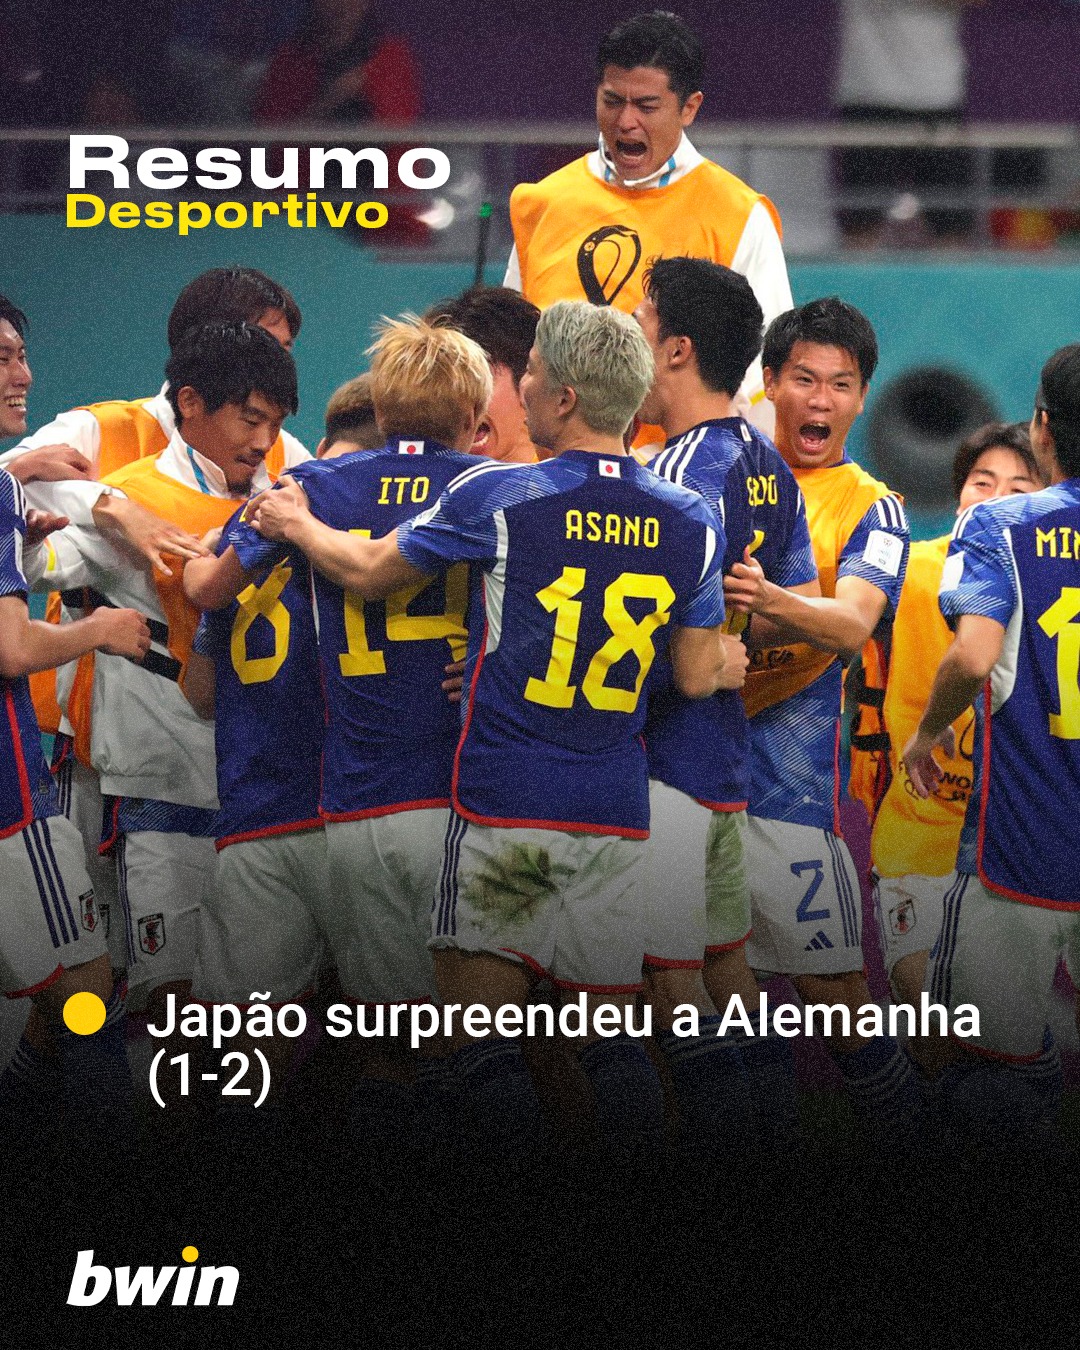 Japão surpreendeu a Alemanha (1-2)